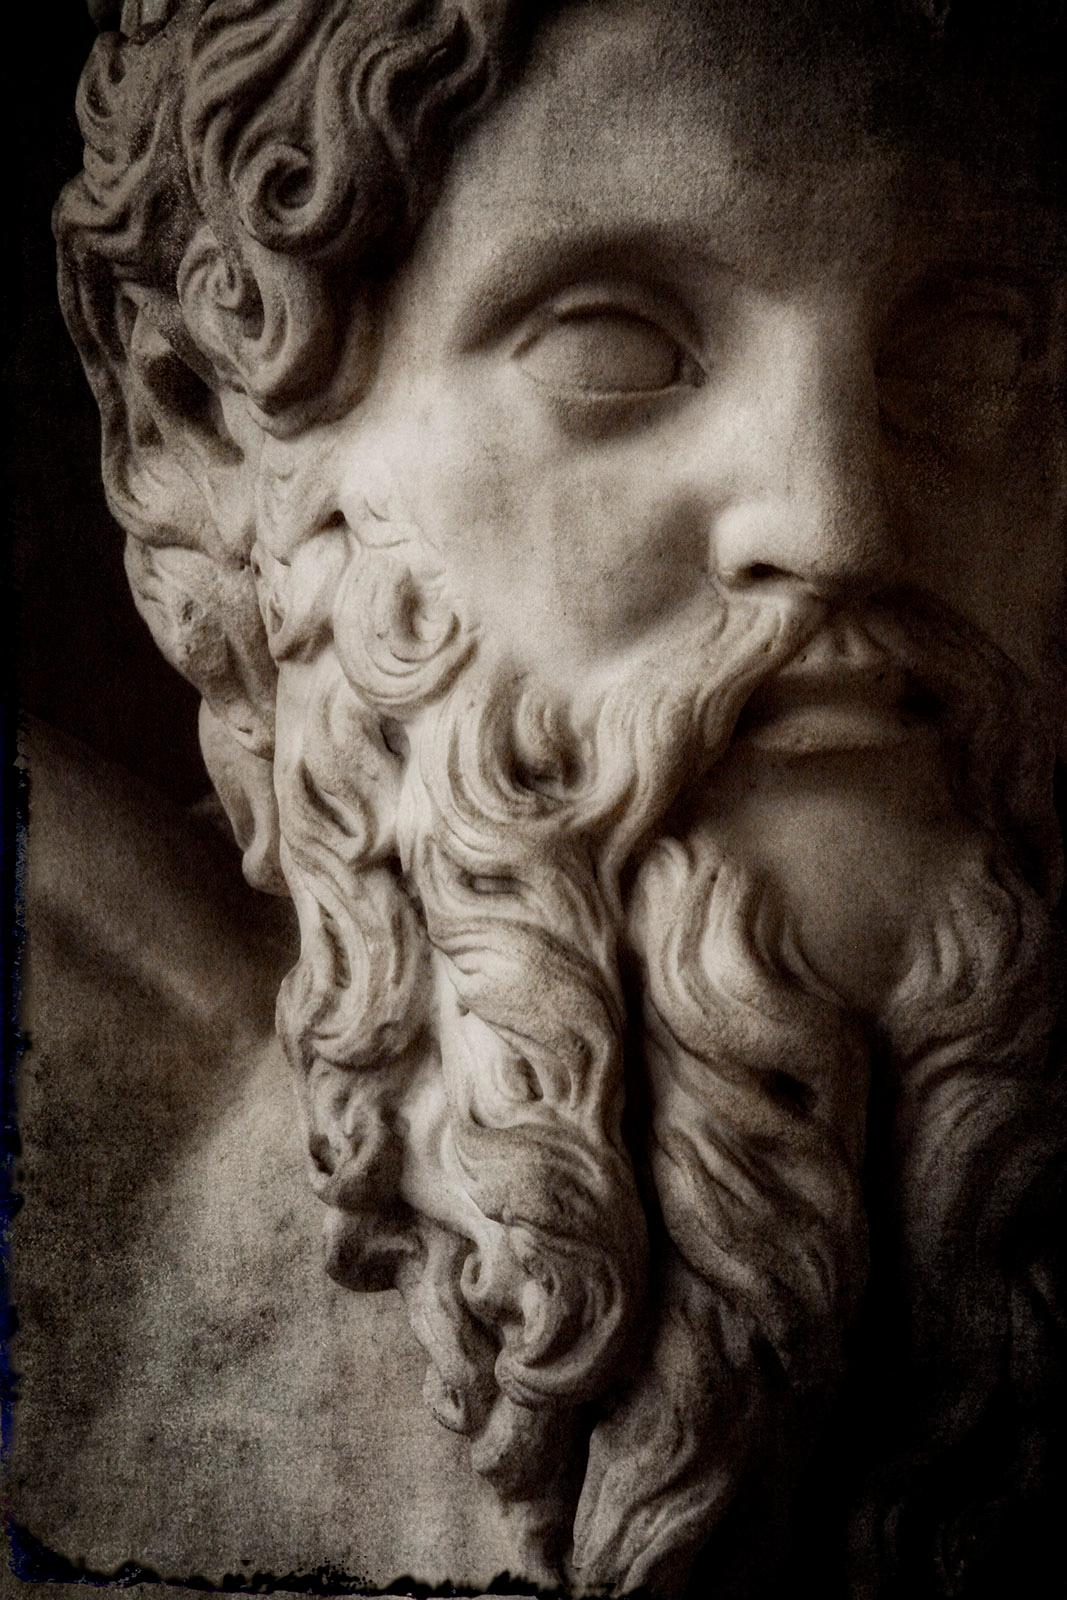 Still-Life Photograph Michael Banks - Sculpture italienne 2 - Impression pigmentaire en édition limitée signée, dieu grec, mythologie